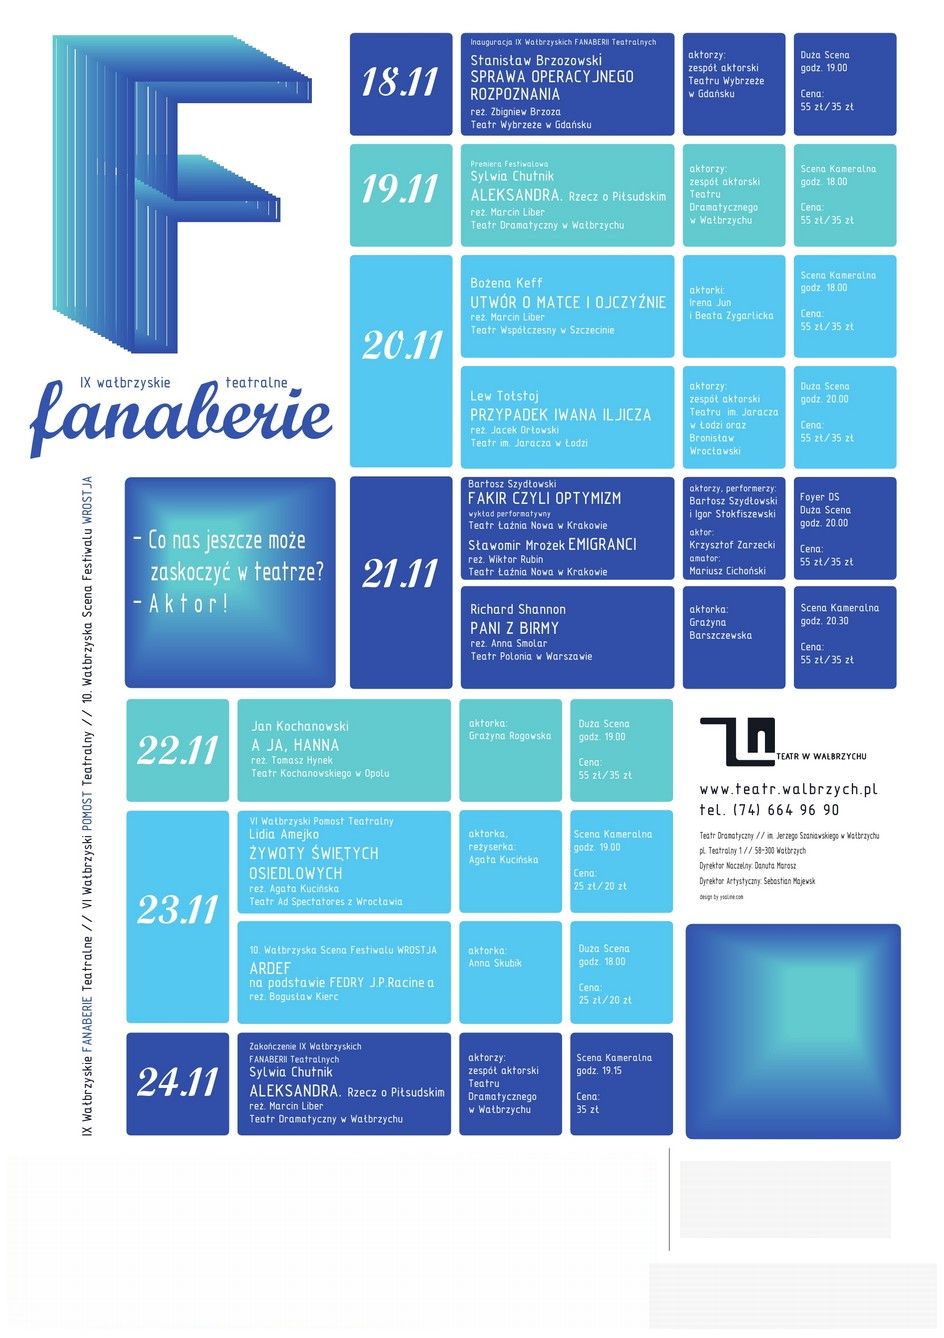 Plakat 9. edycji Festiwalu Fanaberie Teatralne w Wałbrzychu (źródło: materiały prasowe organizatora)